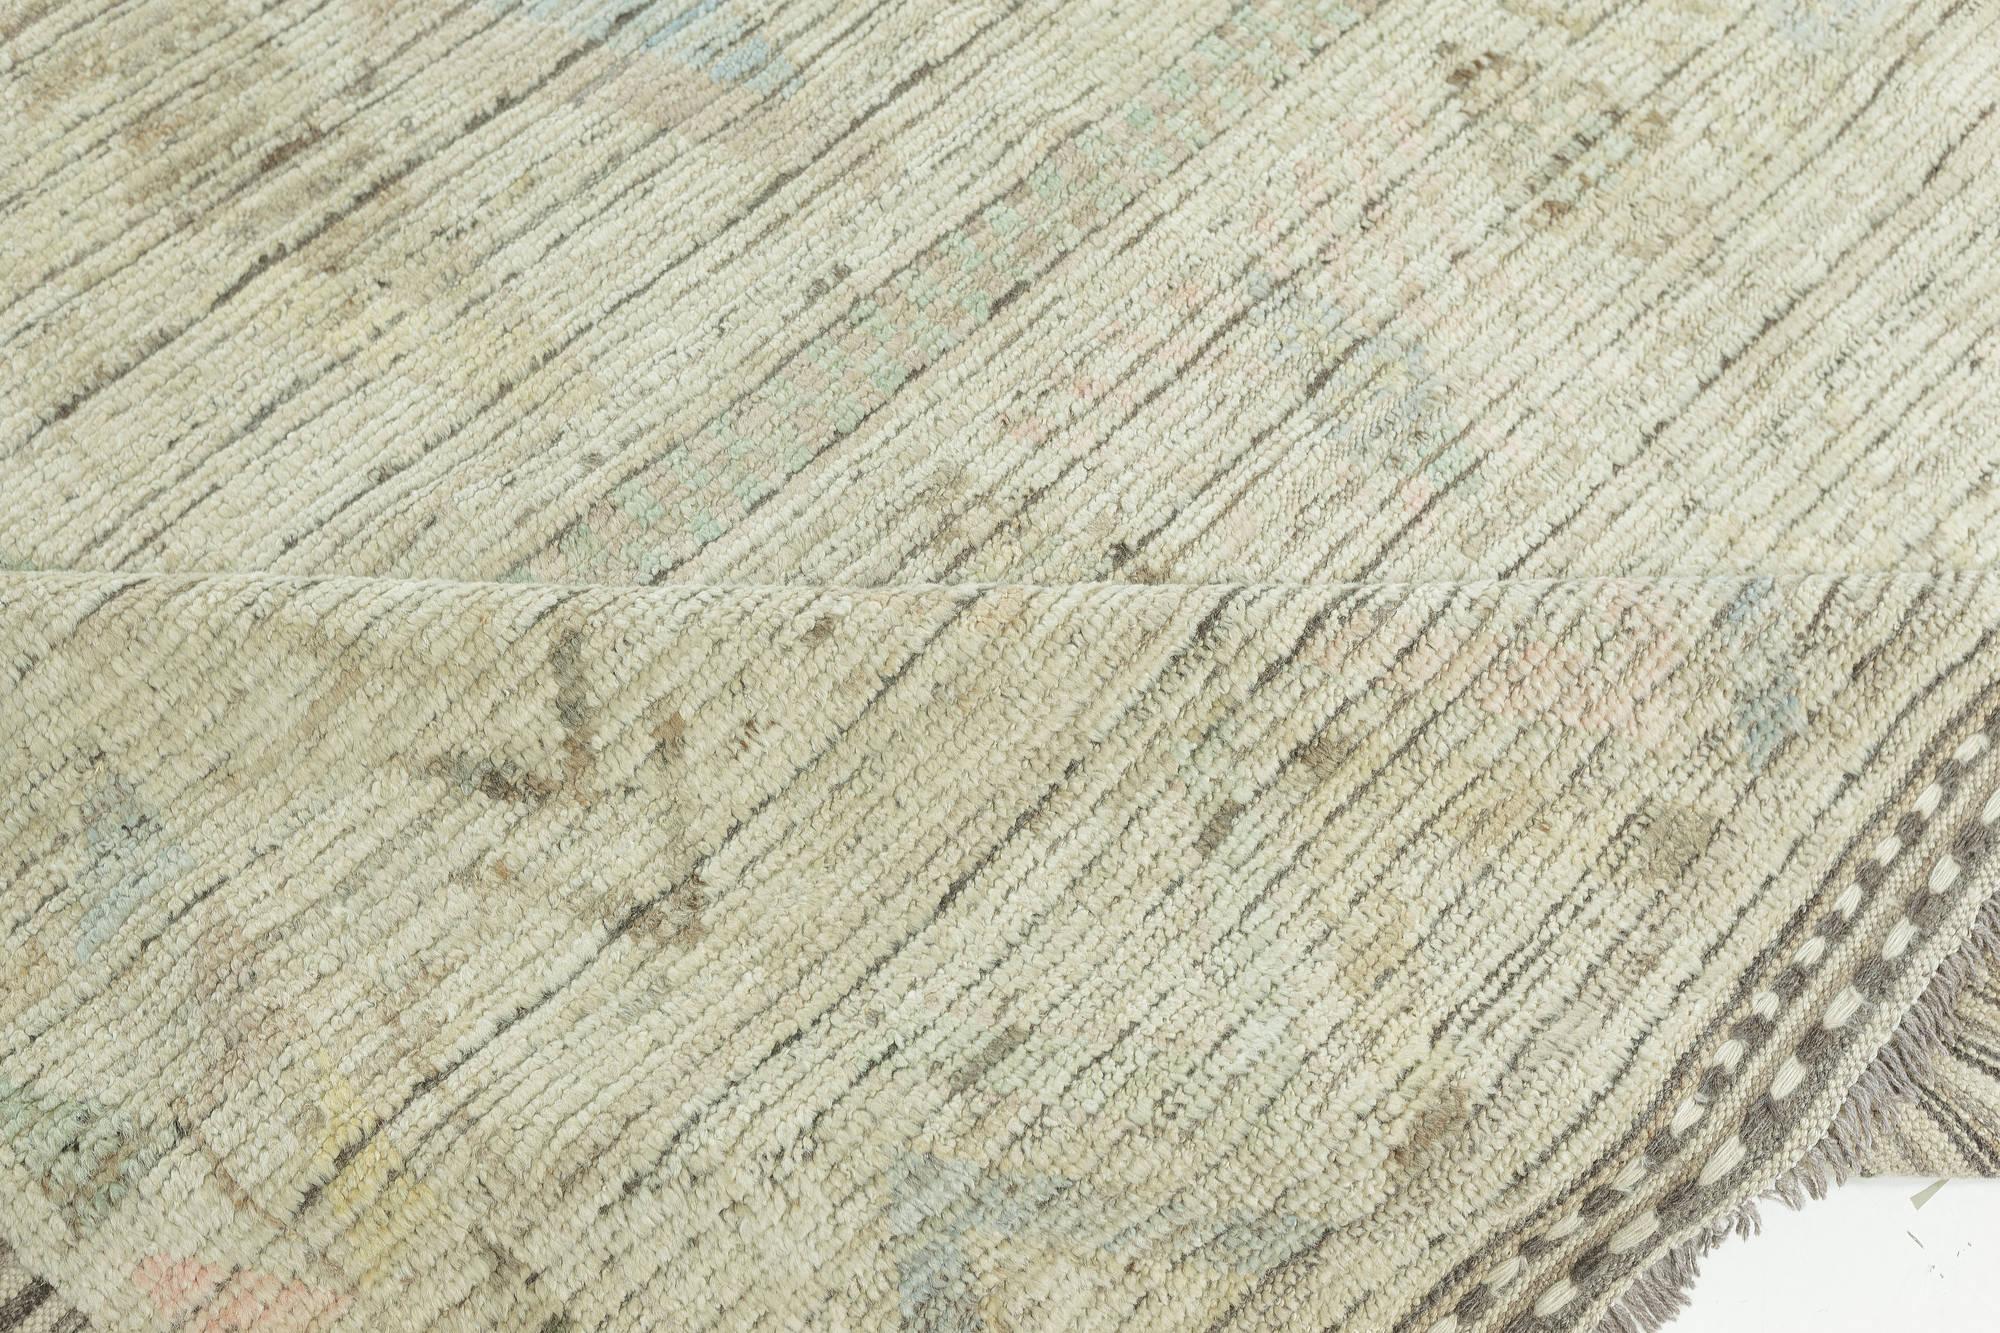 Moderner, texturierter Tribal-Teppich in gedeckten Farben von Doris Leslie Blau.
Größe: 15'5